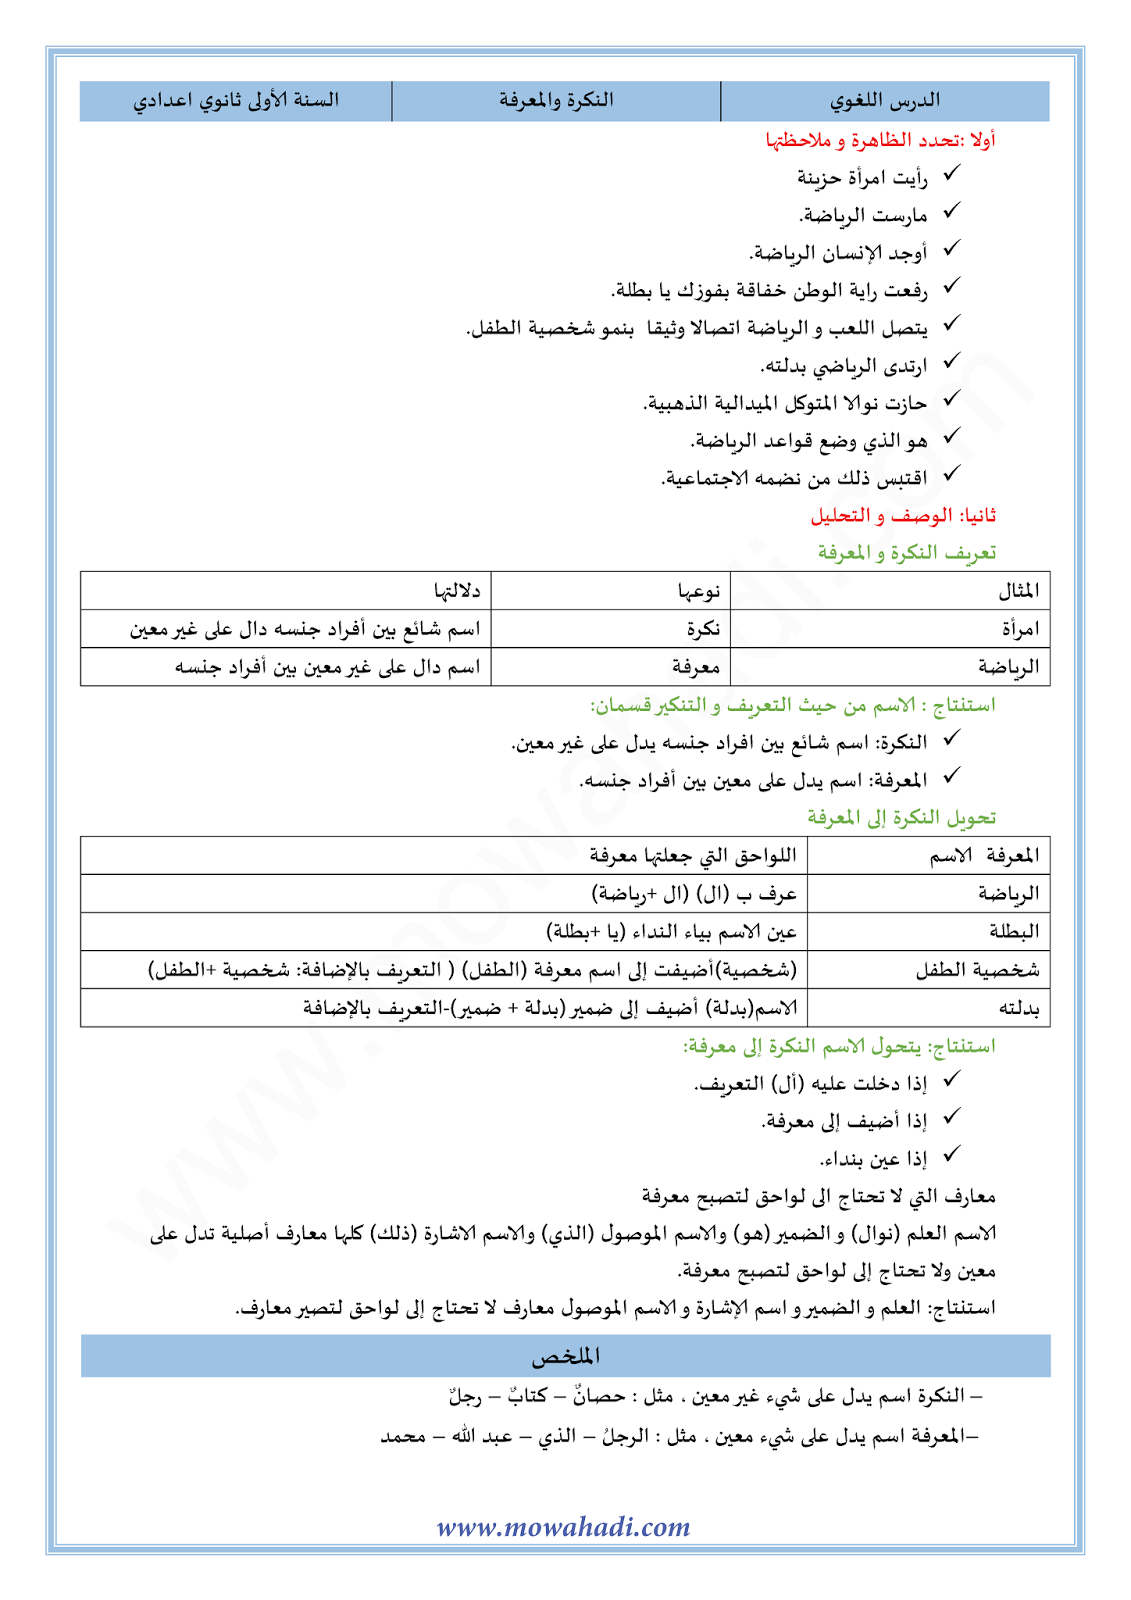 الدرس اللغوي النكرة و المعرفة للسنة الأولى اعدادي في مادة اللغة العربية 12-cours-dars-loghawi1_001